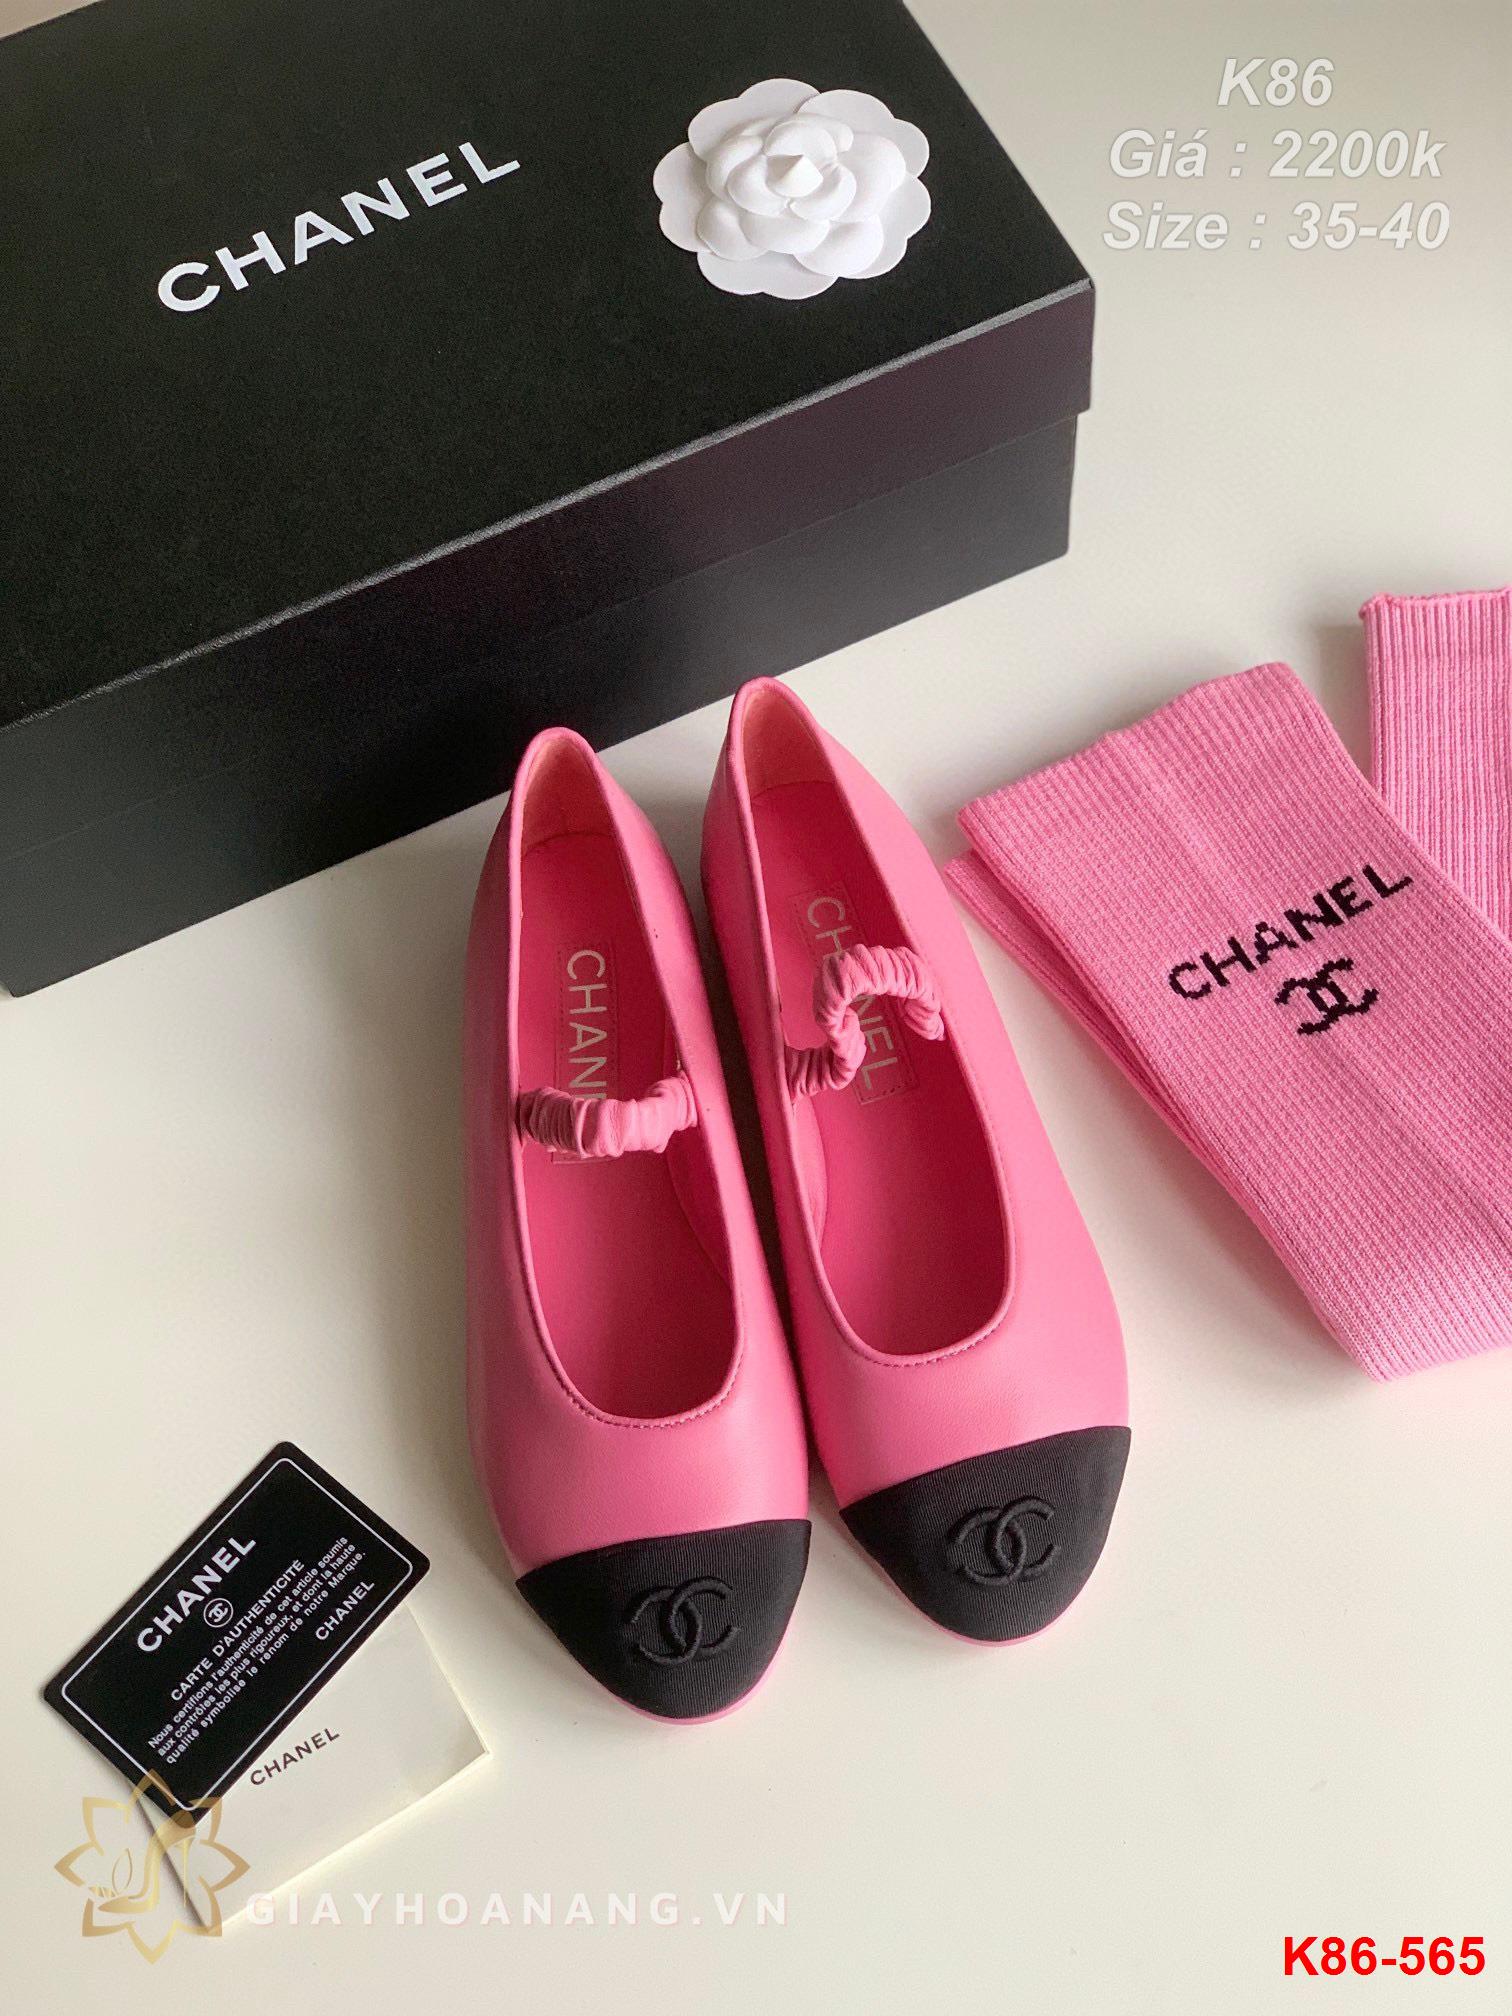 K86-565 Chanel giày bệt siêu cấp